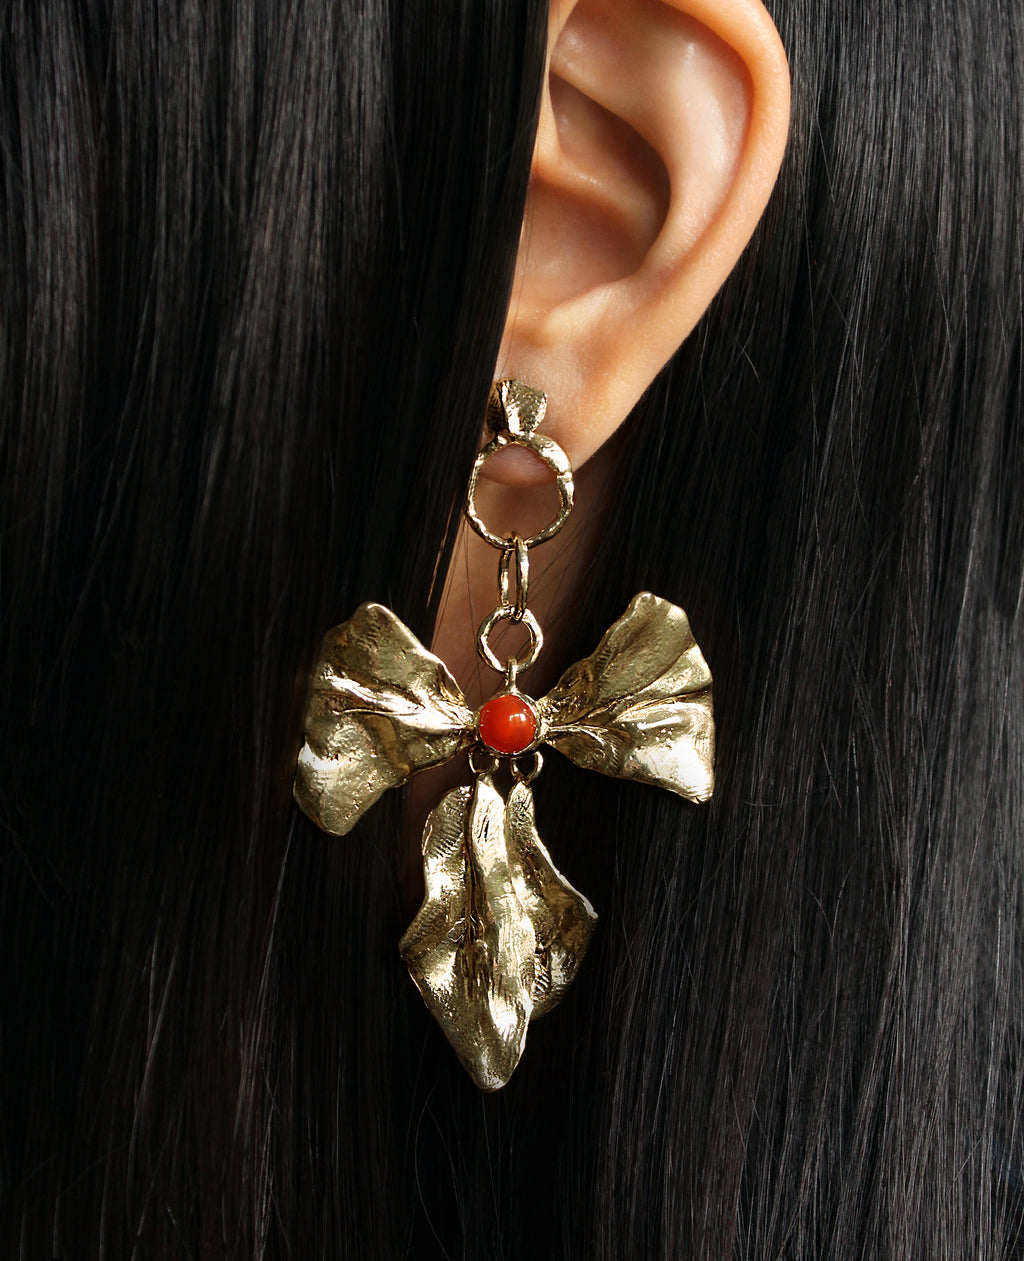 REIGN BOW // boucles d'oreilles avec cornaline - ORA-C jewelry - bijoux faits à la main par Caroline Pham, designer indépendante basée à Montréal